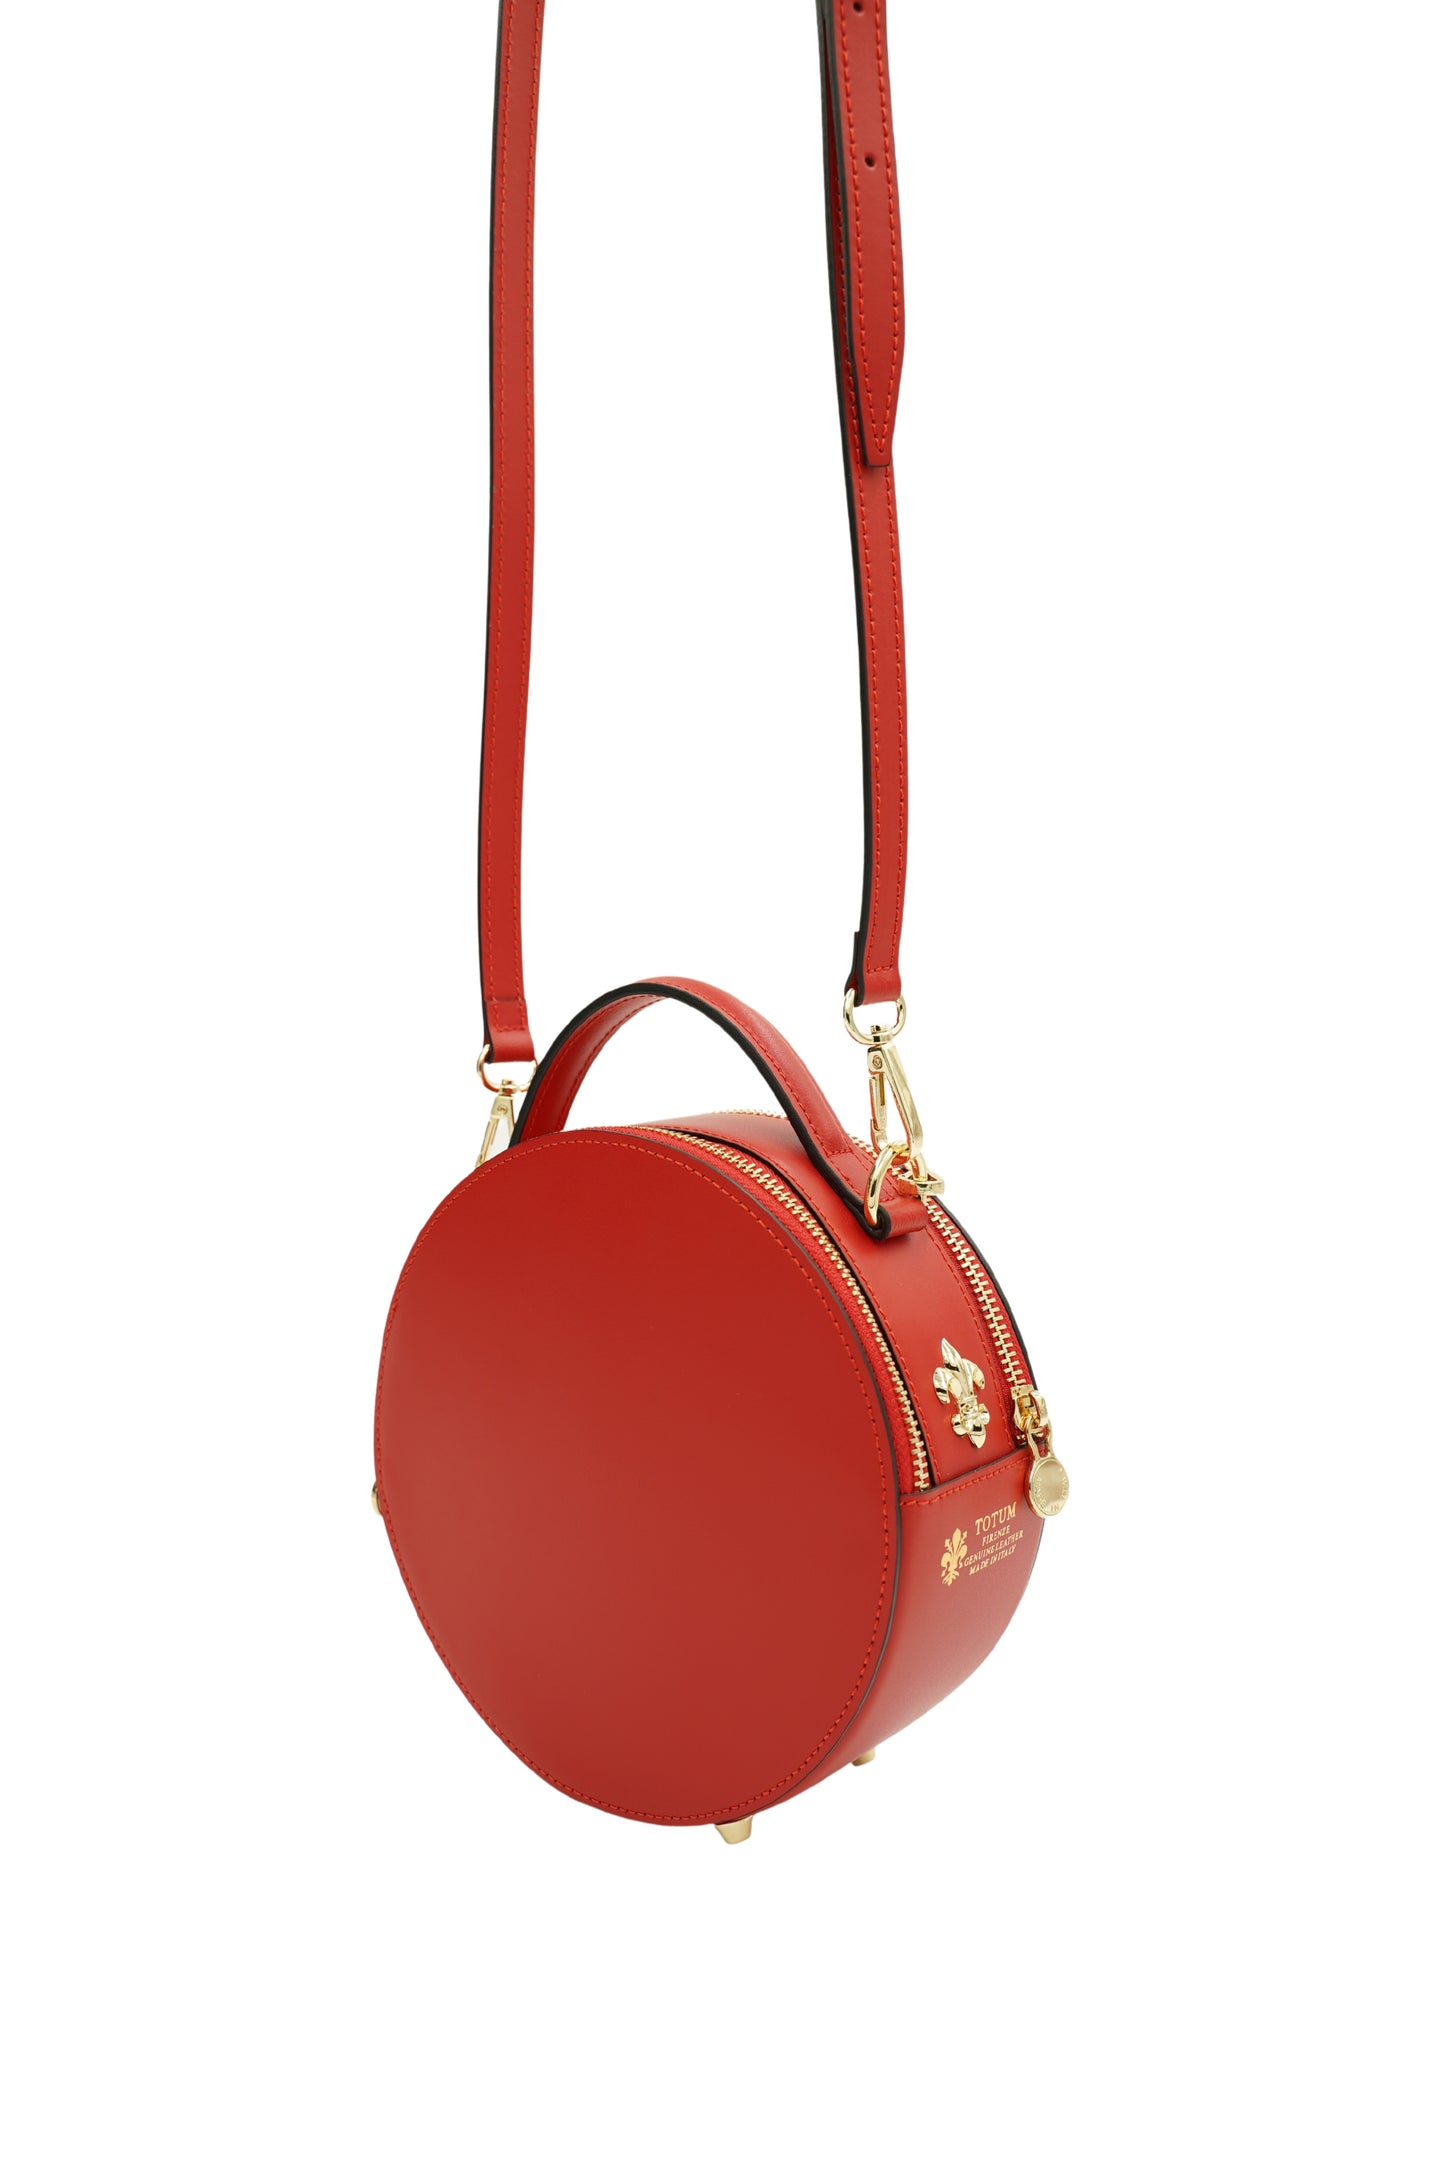 Miss O Mini Bag in Scarlet Red